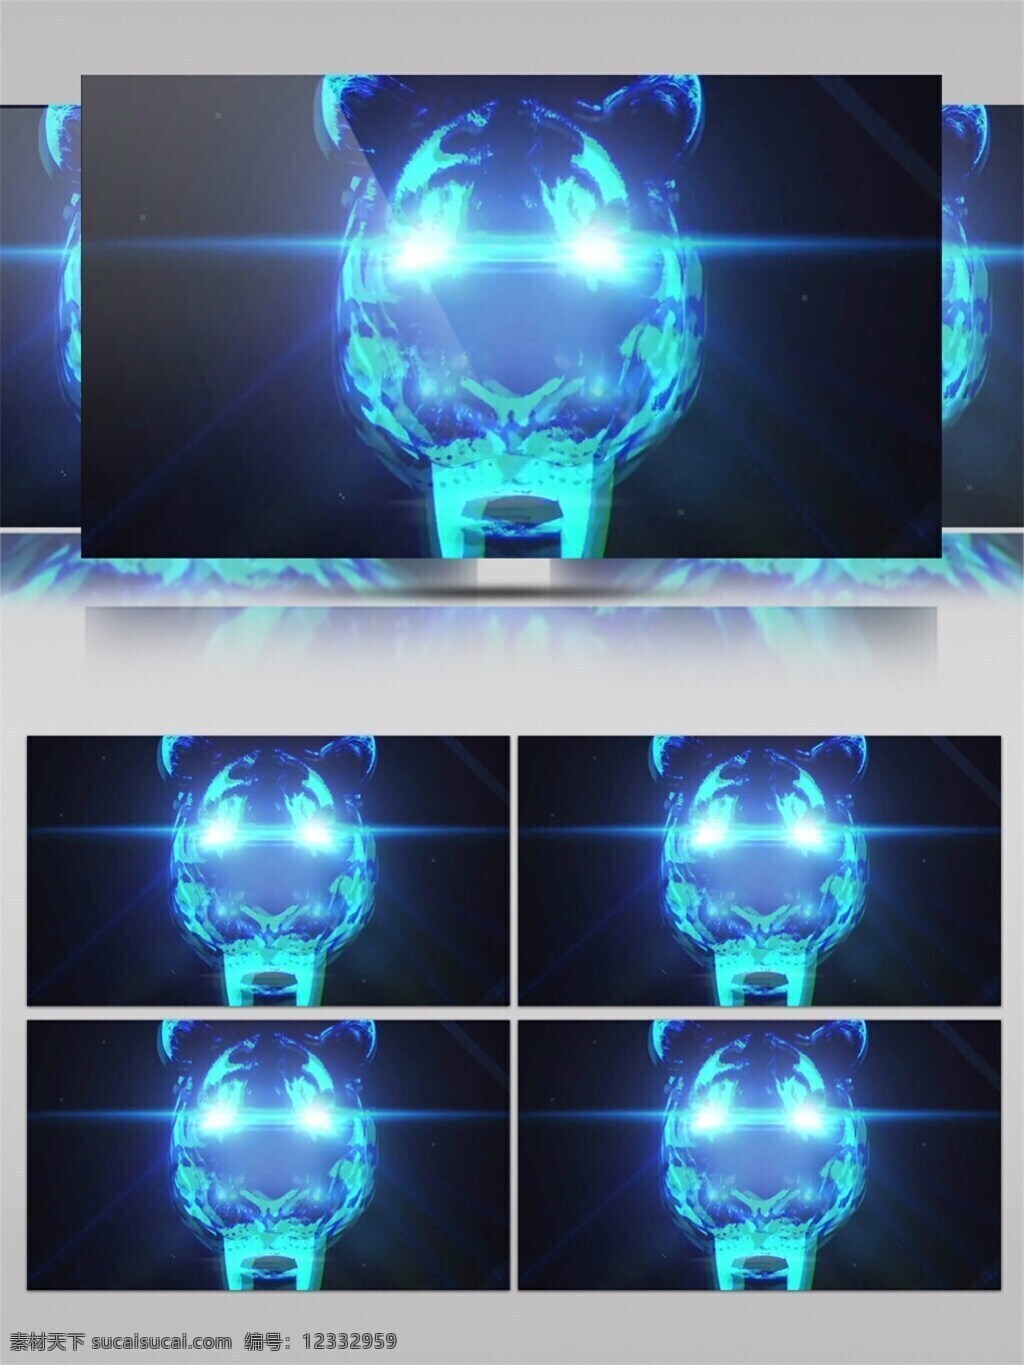 蓝光 猫咪 高清 视频 3d视频素材 浮光掠影 光斑碎点 漂浮光 炫酷蓝光